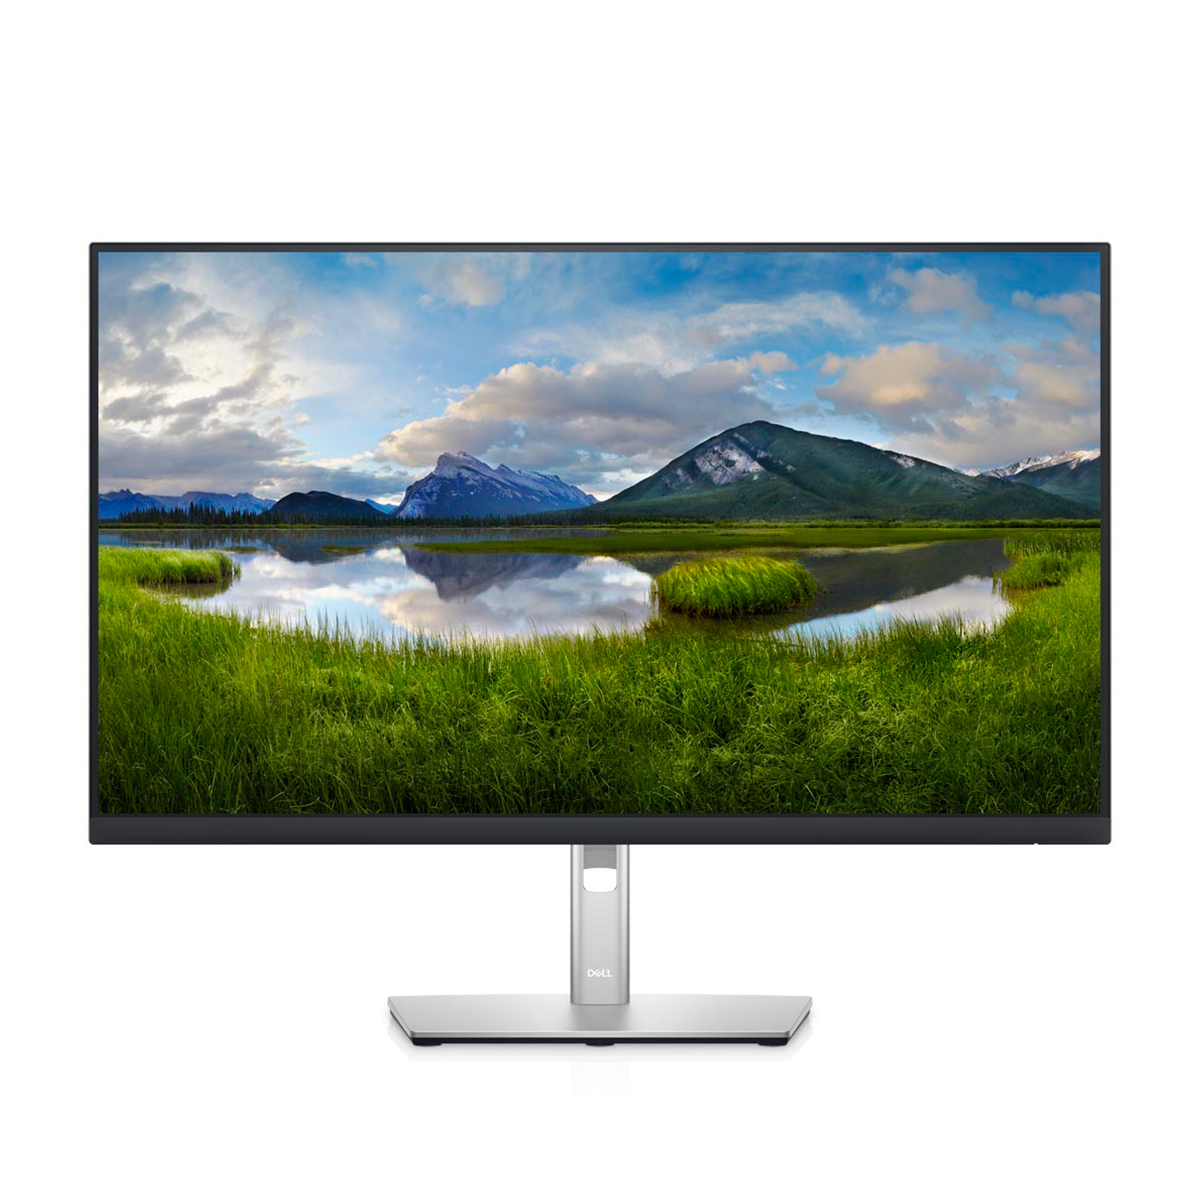 Monitor PC Dell P2722H / Led / 27 Pulg. / Full HD / 1080 p / HDMI / VGA / Displayport / USB / 60 Hz / 5 ms / Plata con negro